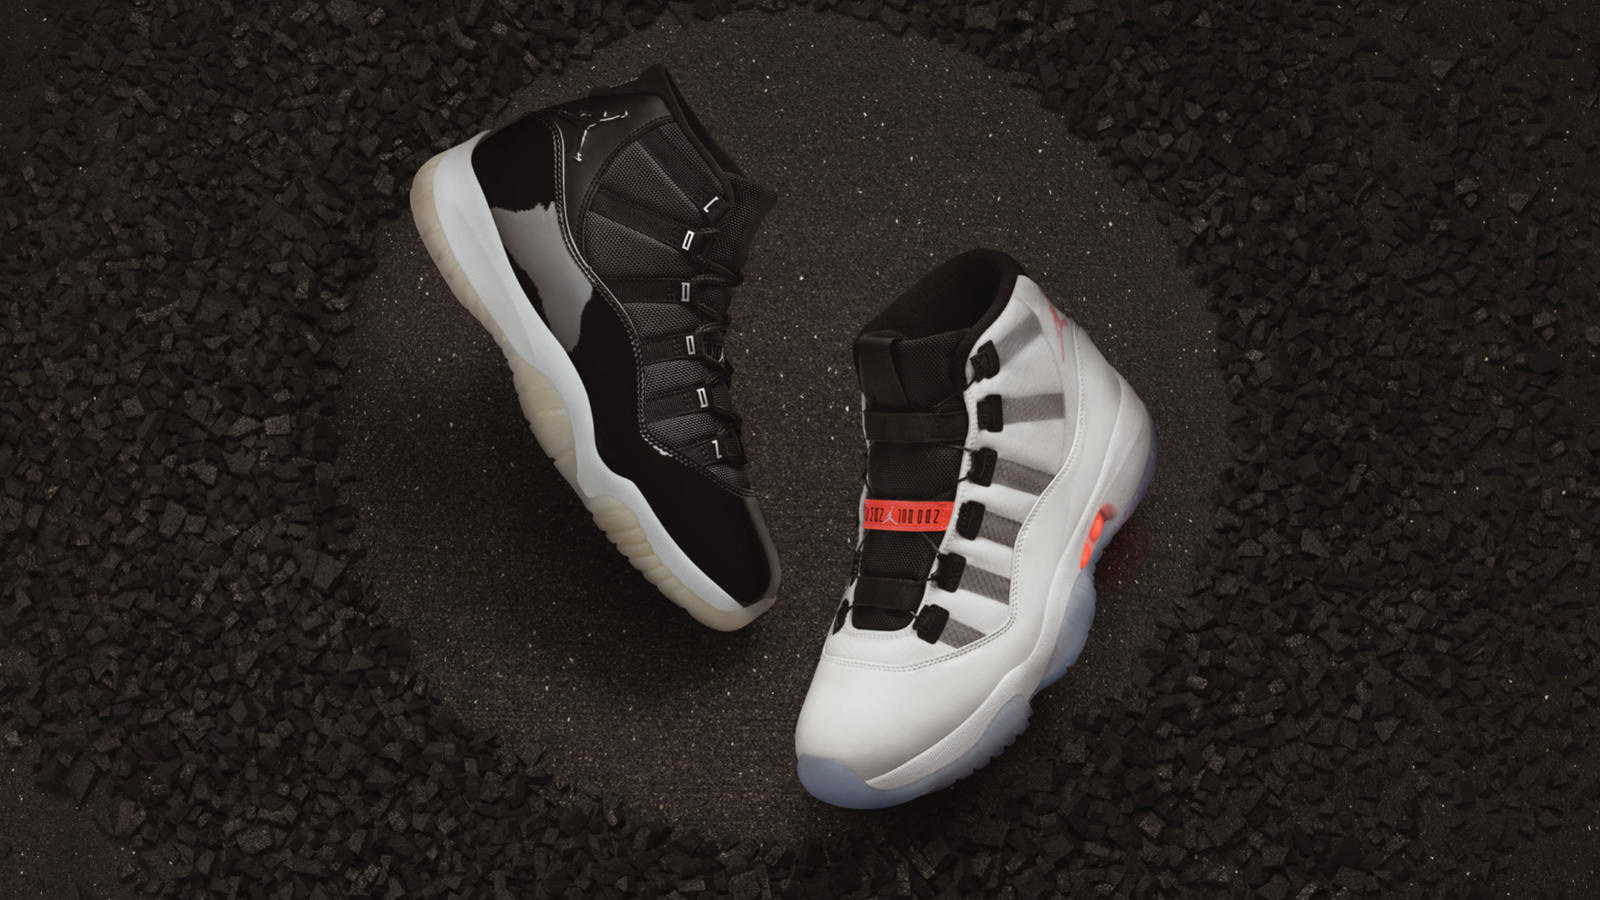 Jordan Brand Reveals Two New Sneakers to Celebrate 25th Anniversary of Air Jordan XI